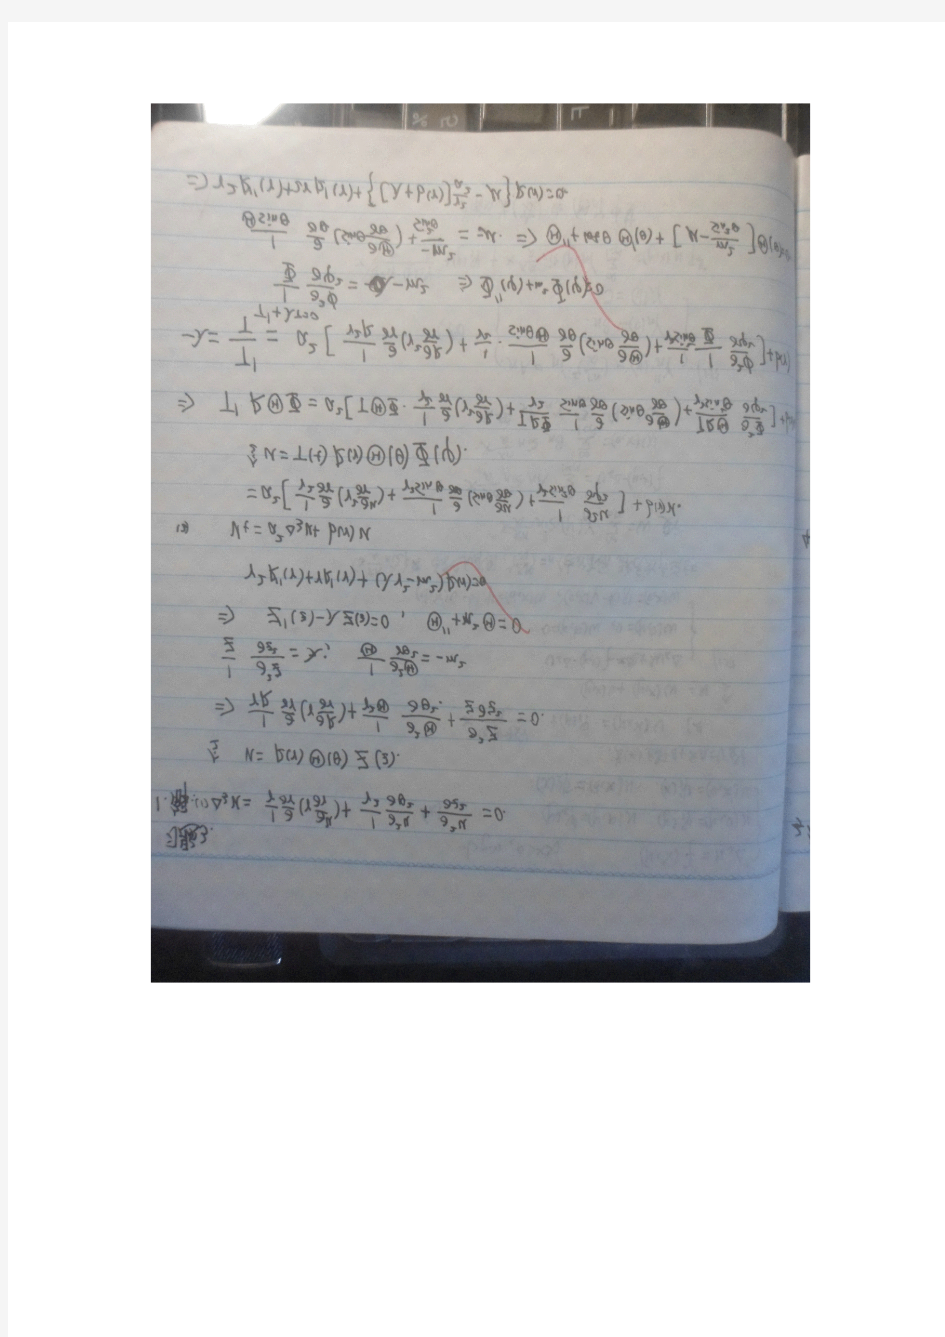 数学物理方程(第二版)部分答案 季孝达 第3章